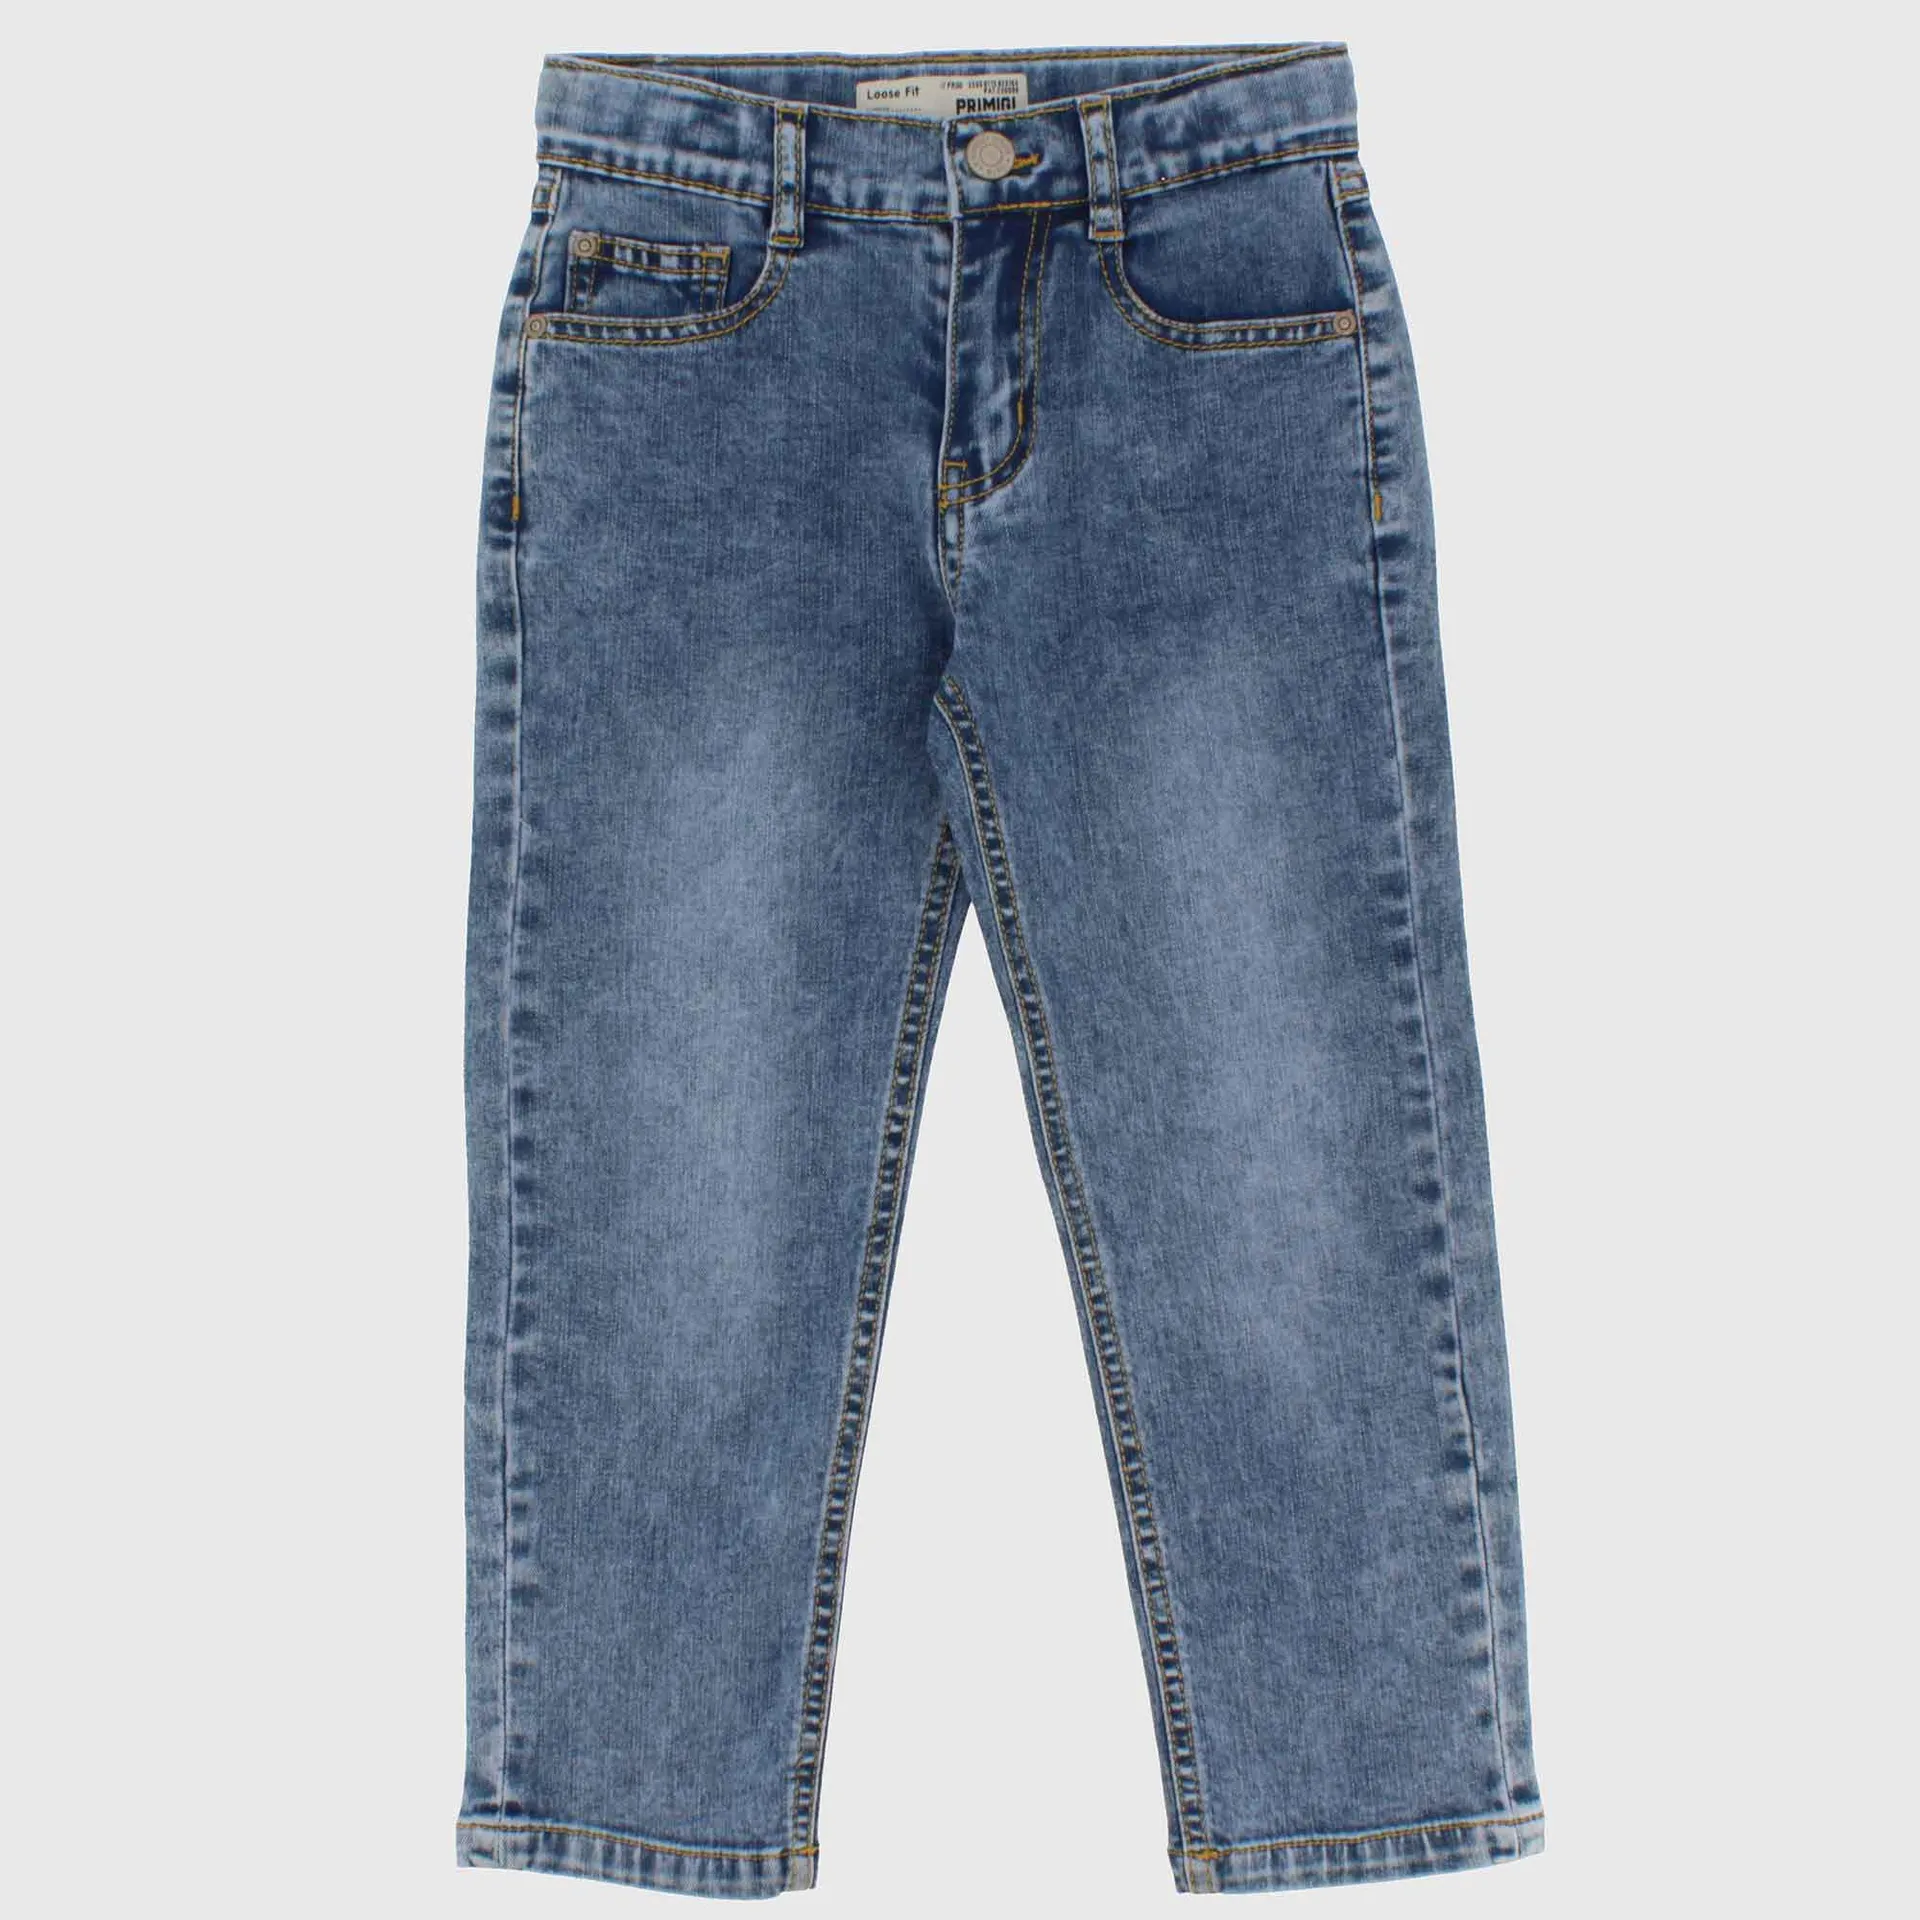 Pantalone in jeans da Bambino, BLU